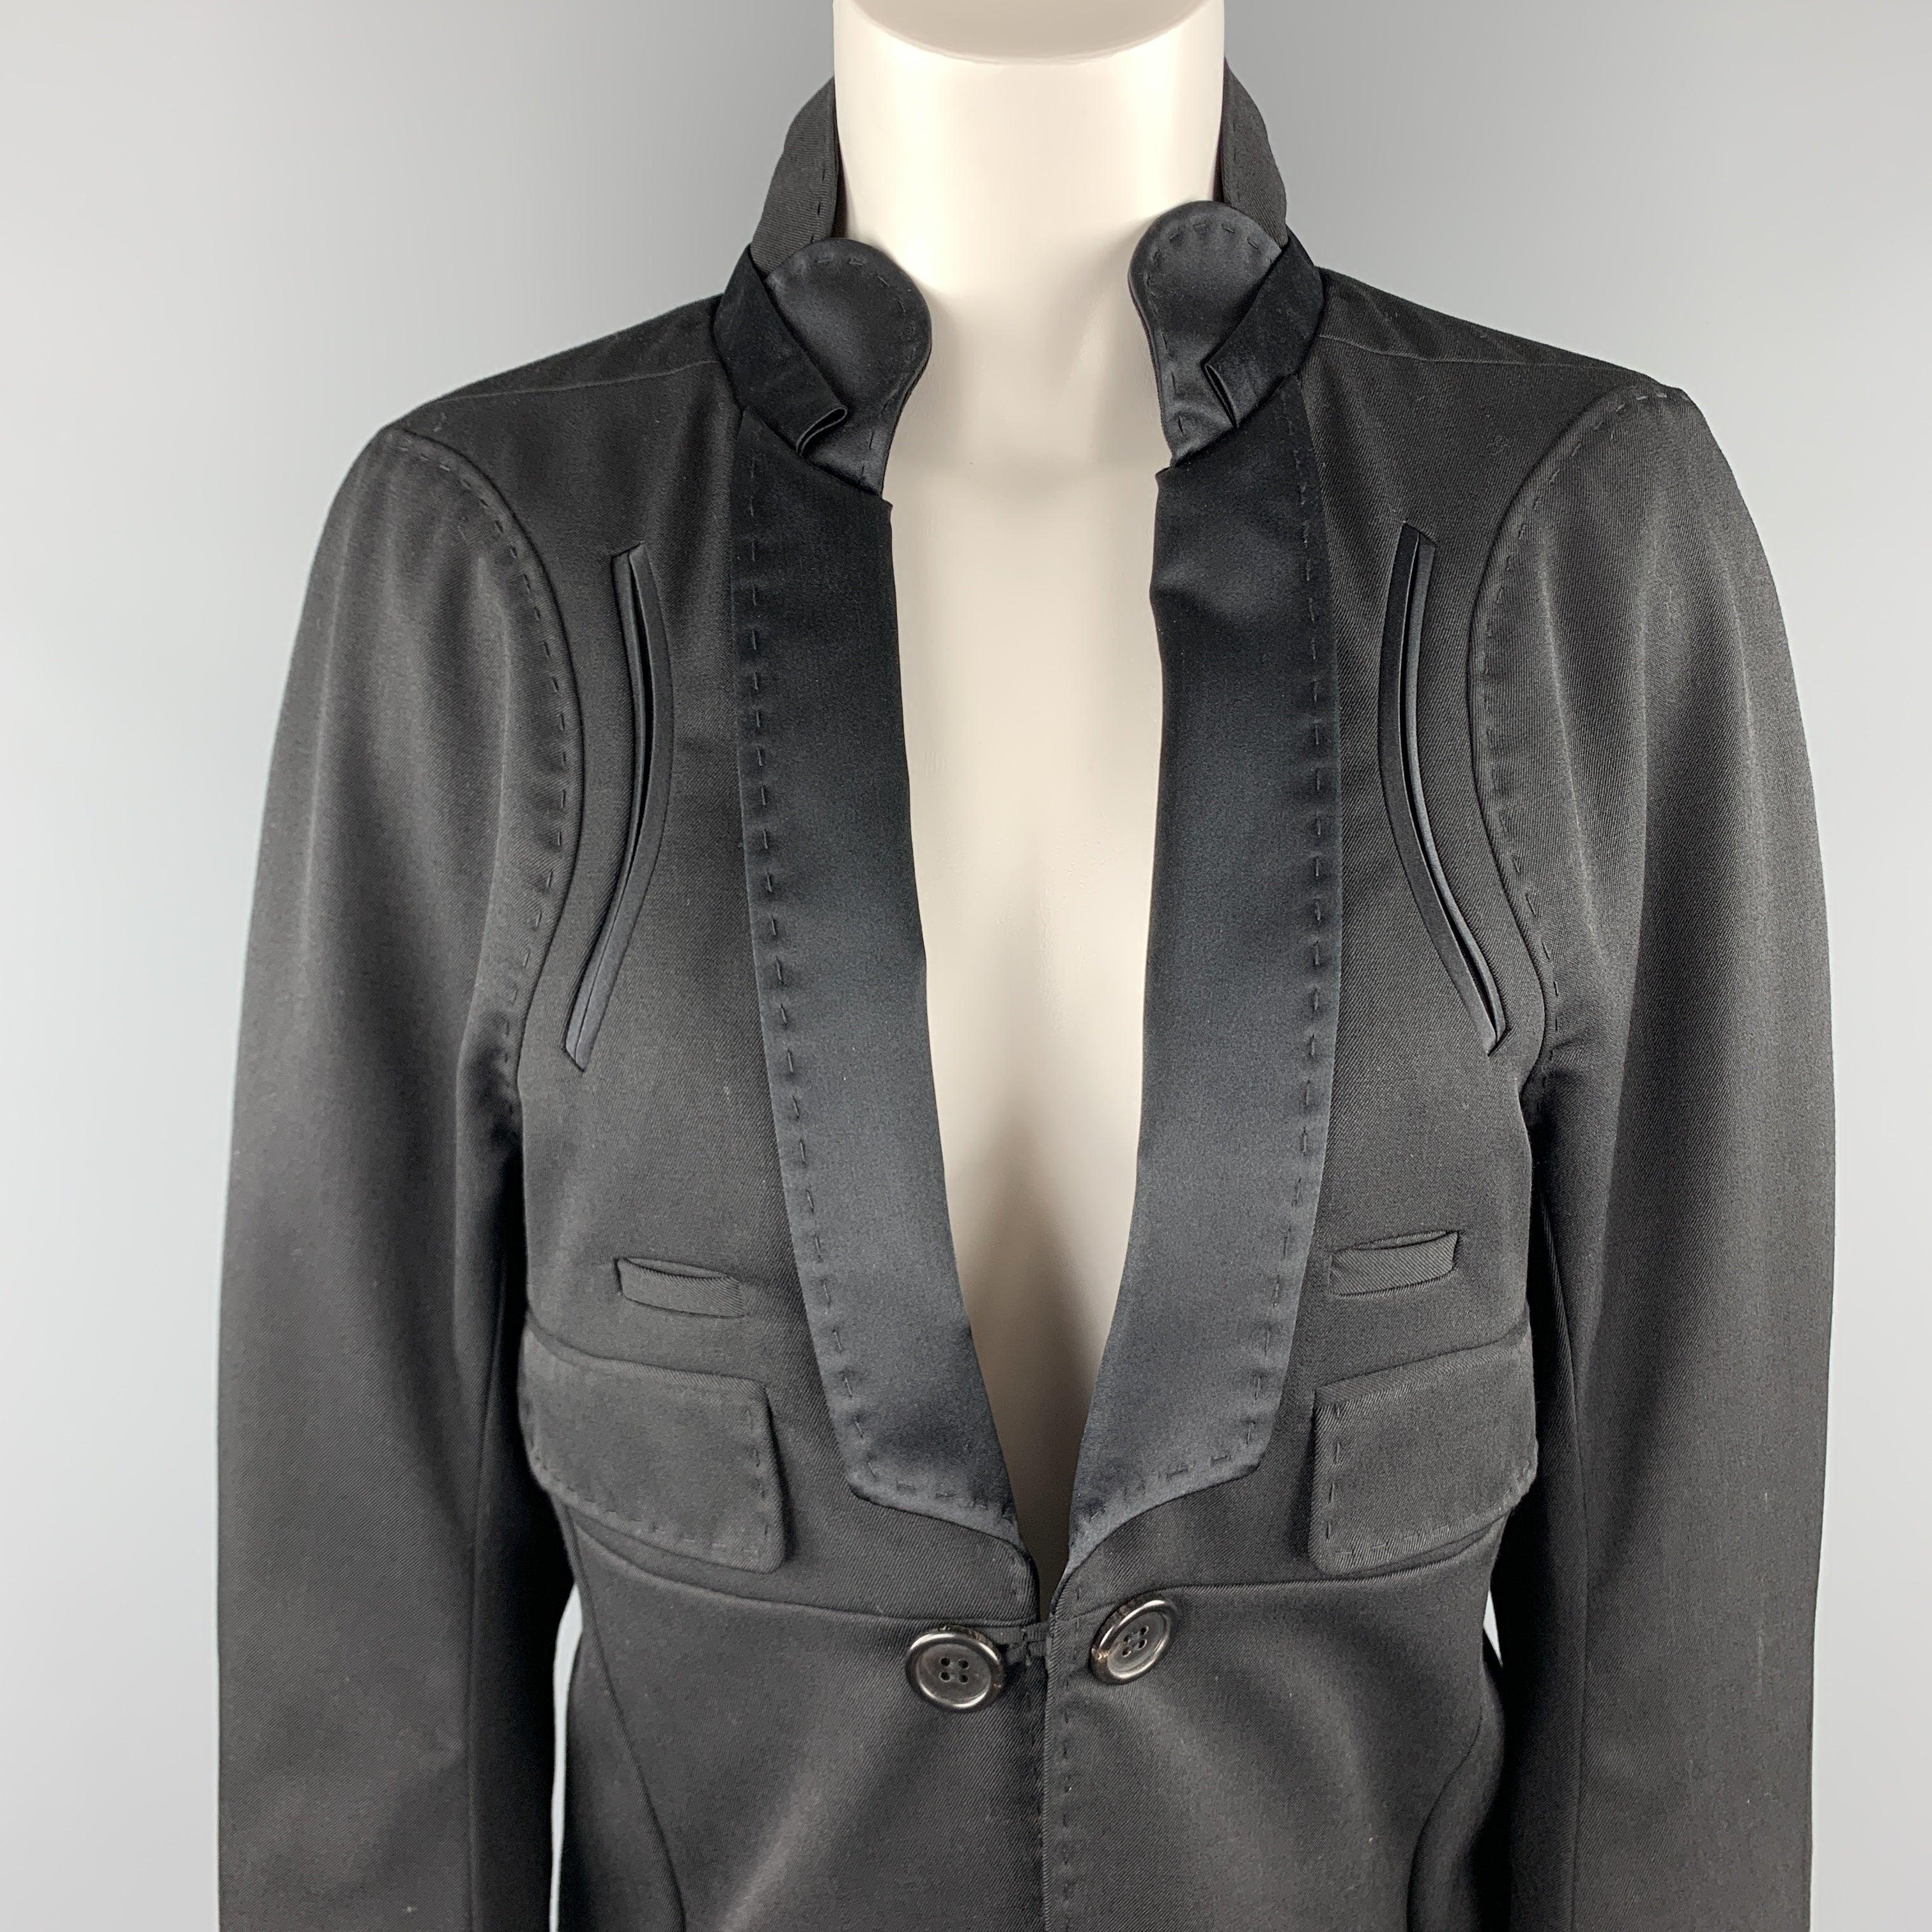 Der UNDERCOVER-Mantel im Smoking-Stil ist aus schwarzer Wolle und hat eine Knopfleiste, einen hohen Rückenkragen mit Satin-Schalrevers, Taschendetails und einen Saum im Frack-Stil. Hergestellt in Japan.ausgezeichnet
Gebrauchtes Zustand. 

Markiert: 